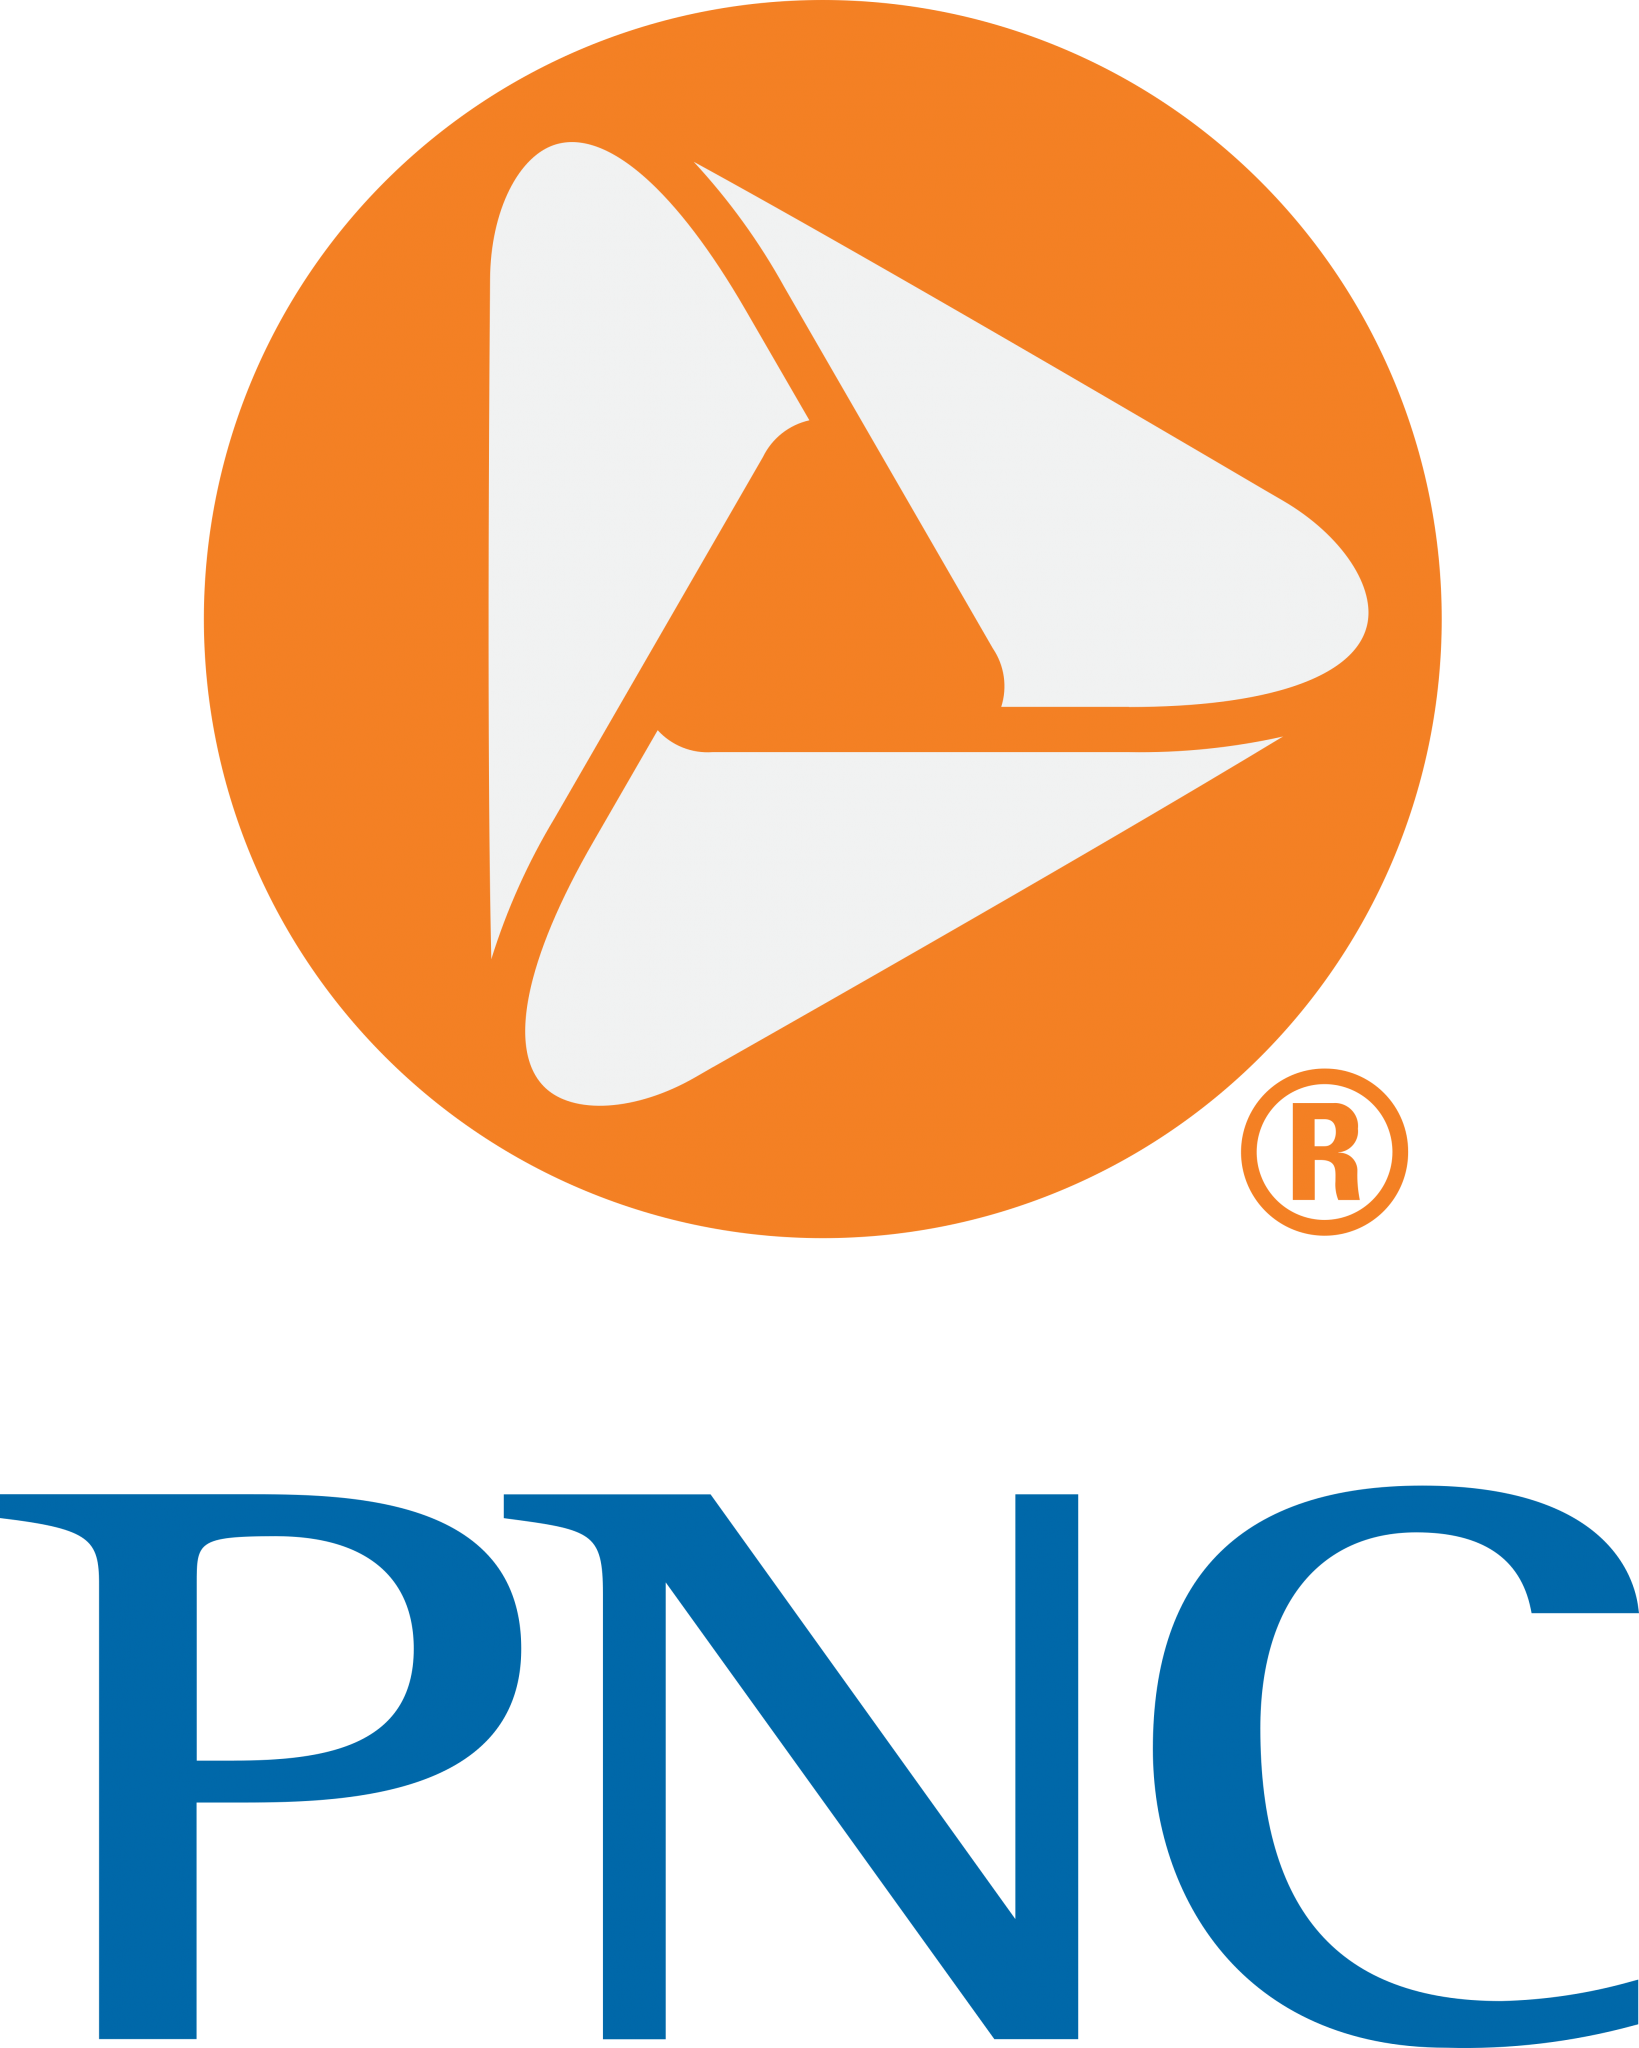 pnc-bank-logo-2-1639x2048.png